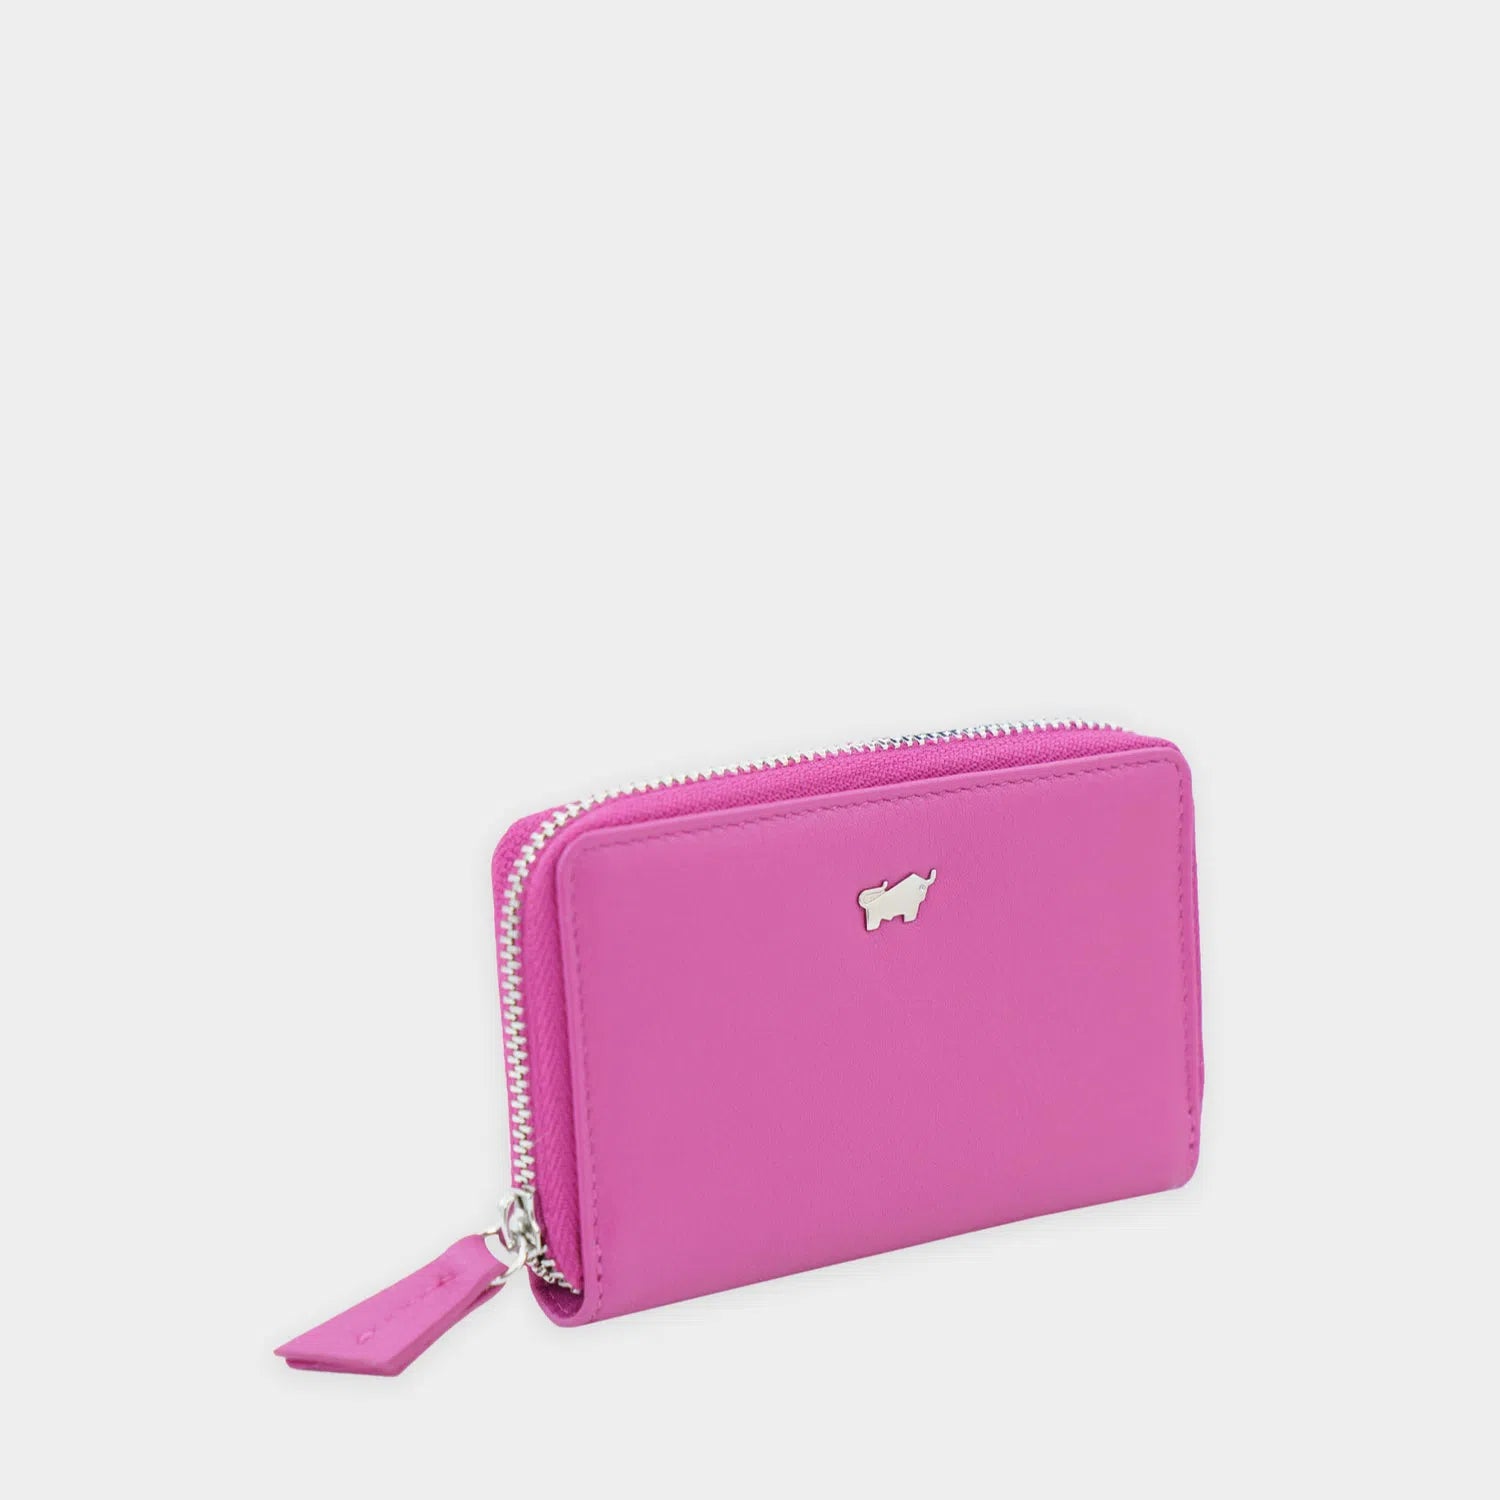 Schrägansicht JOY RFID RV Mini Geldbörse pink hover